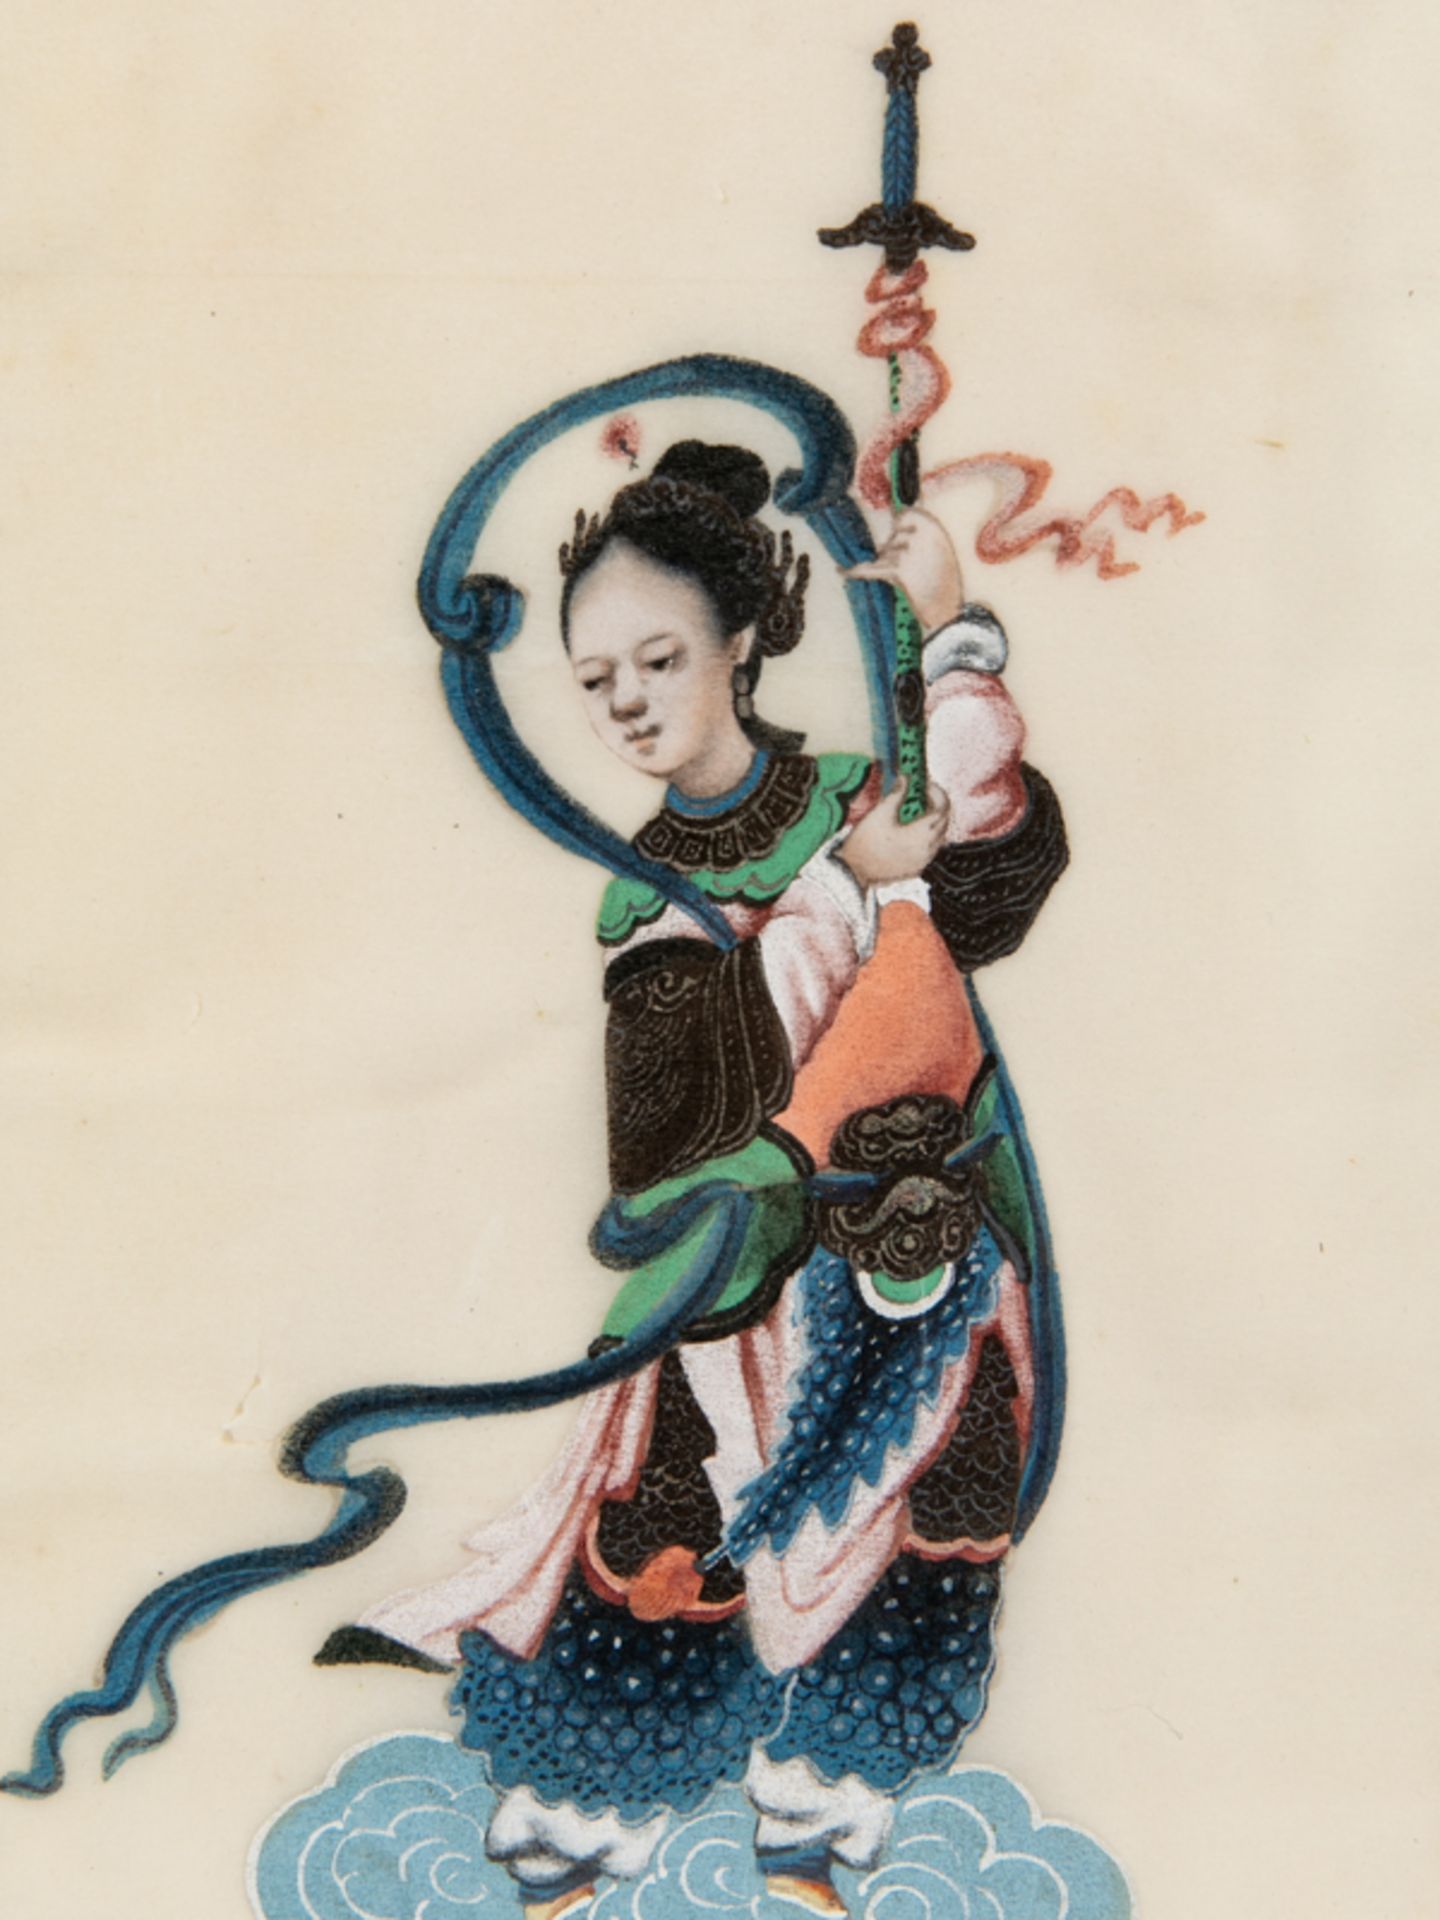 5-farbige Tuschmalerei auf Reispapier; wohl China oder Japan, um 1900. - Image 4 of 4